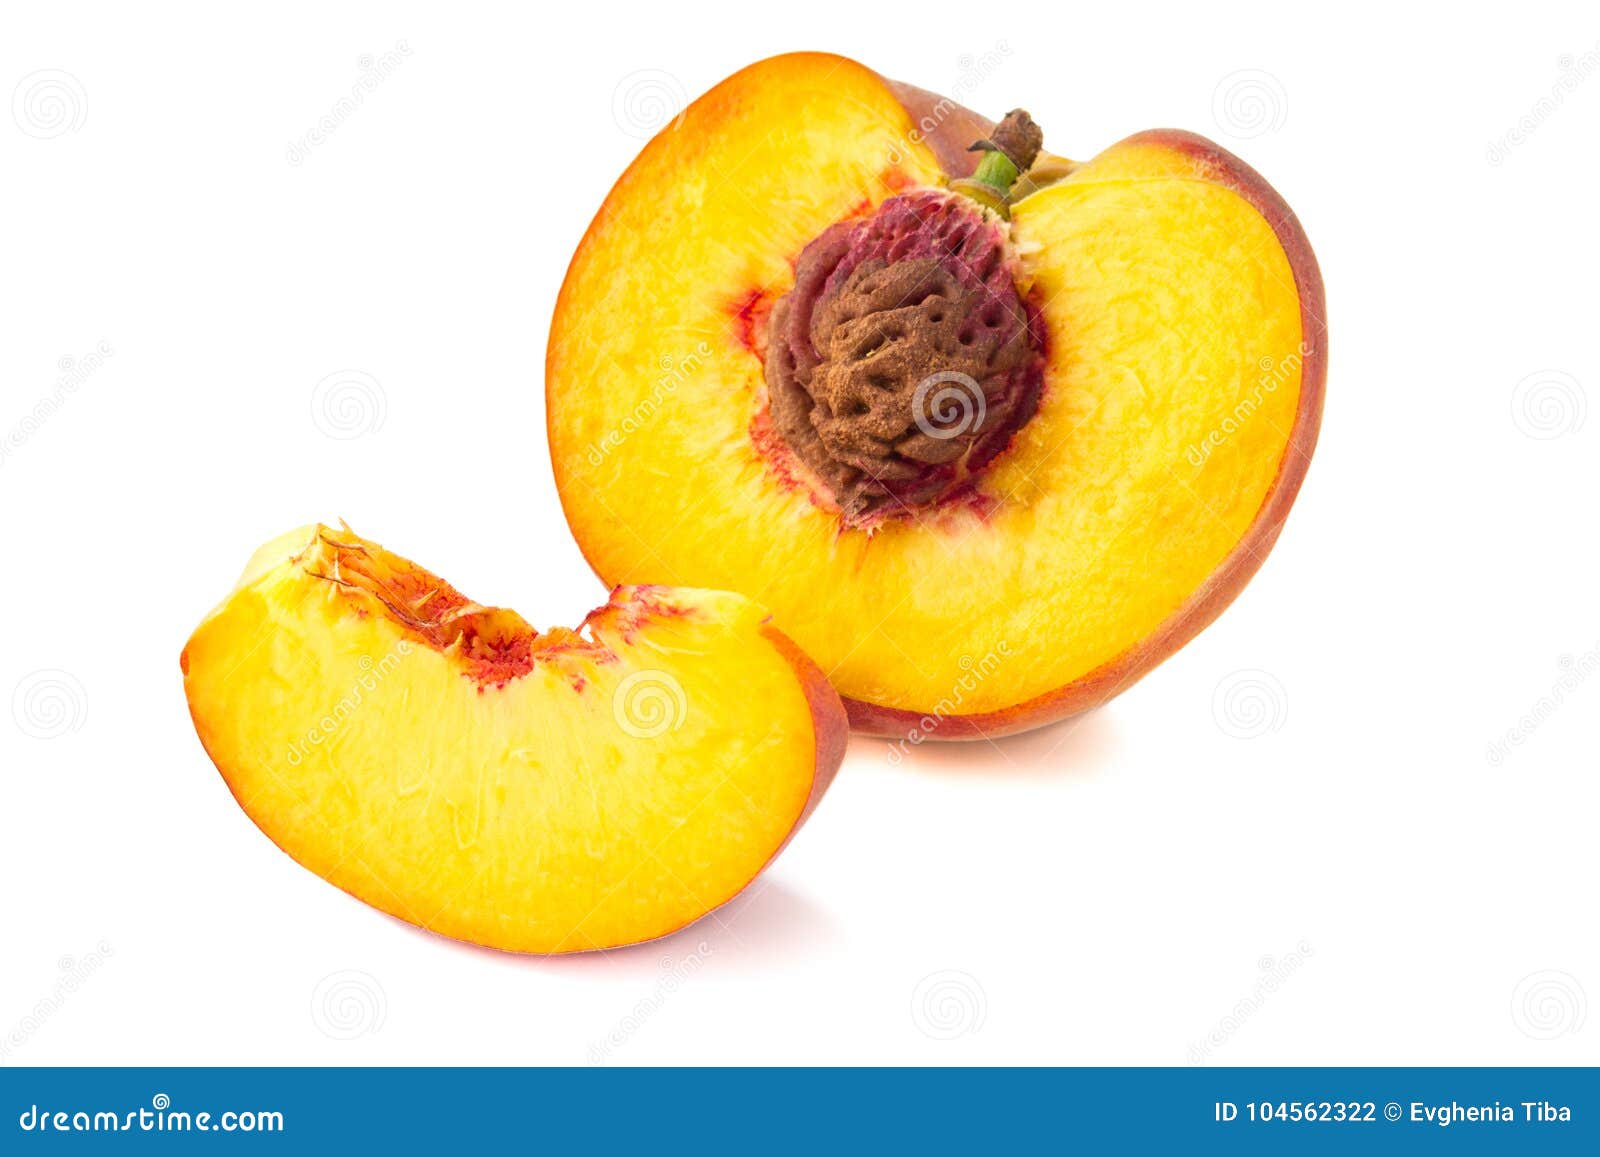 можно при панкреатите есть персики